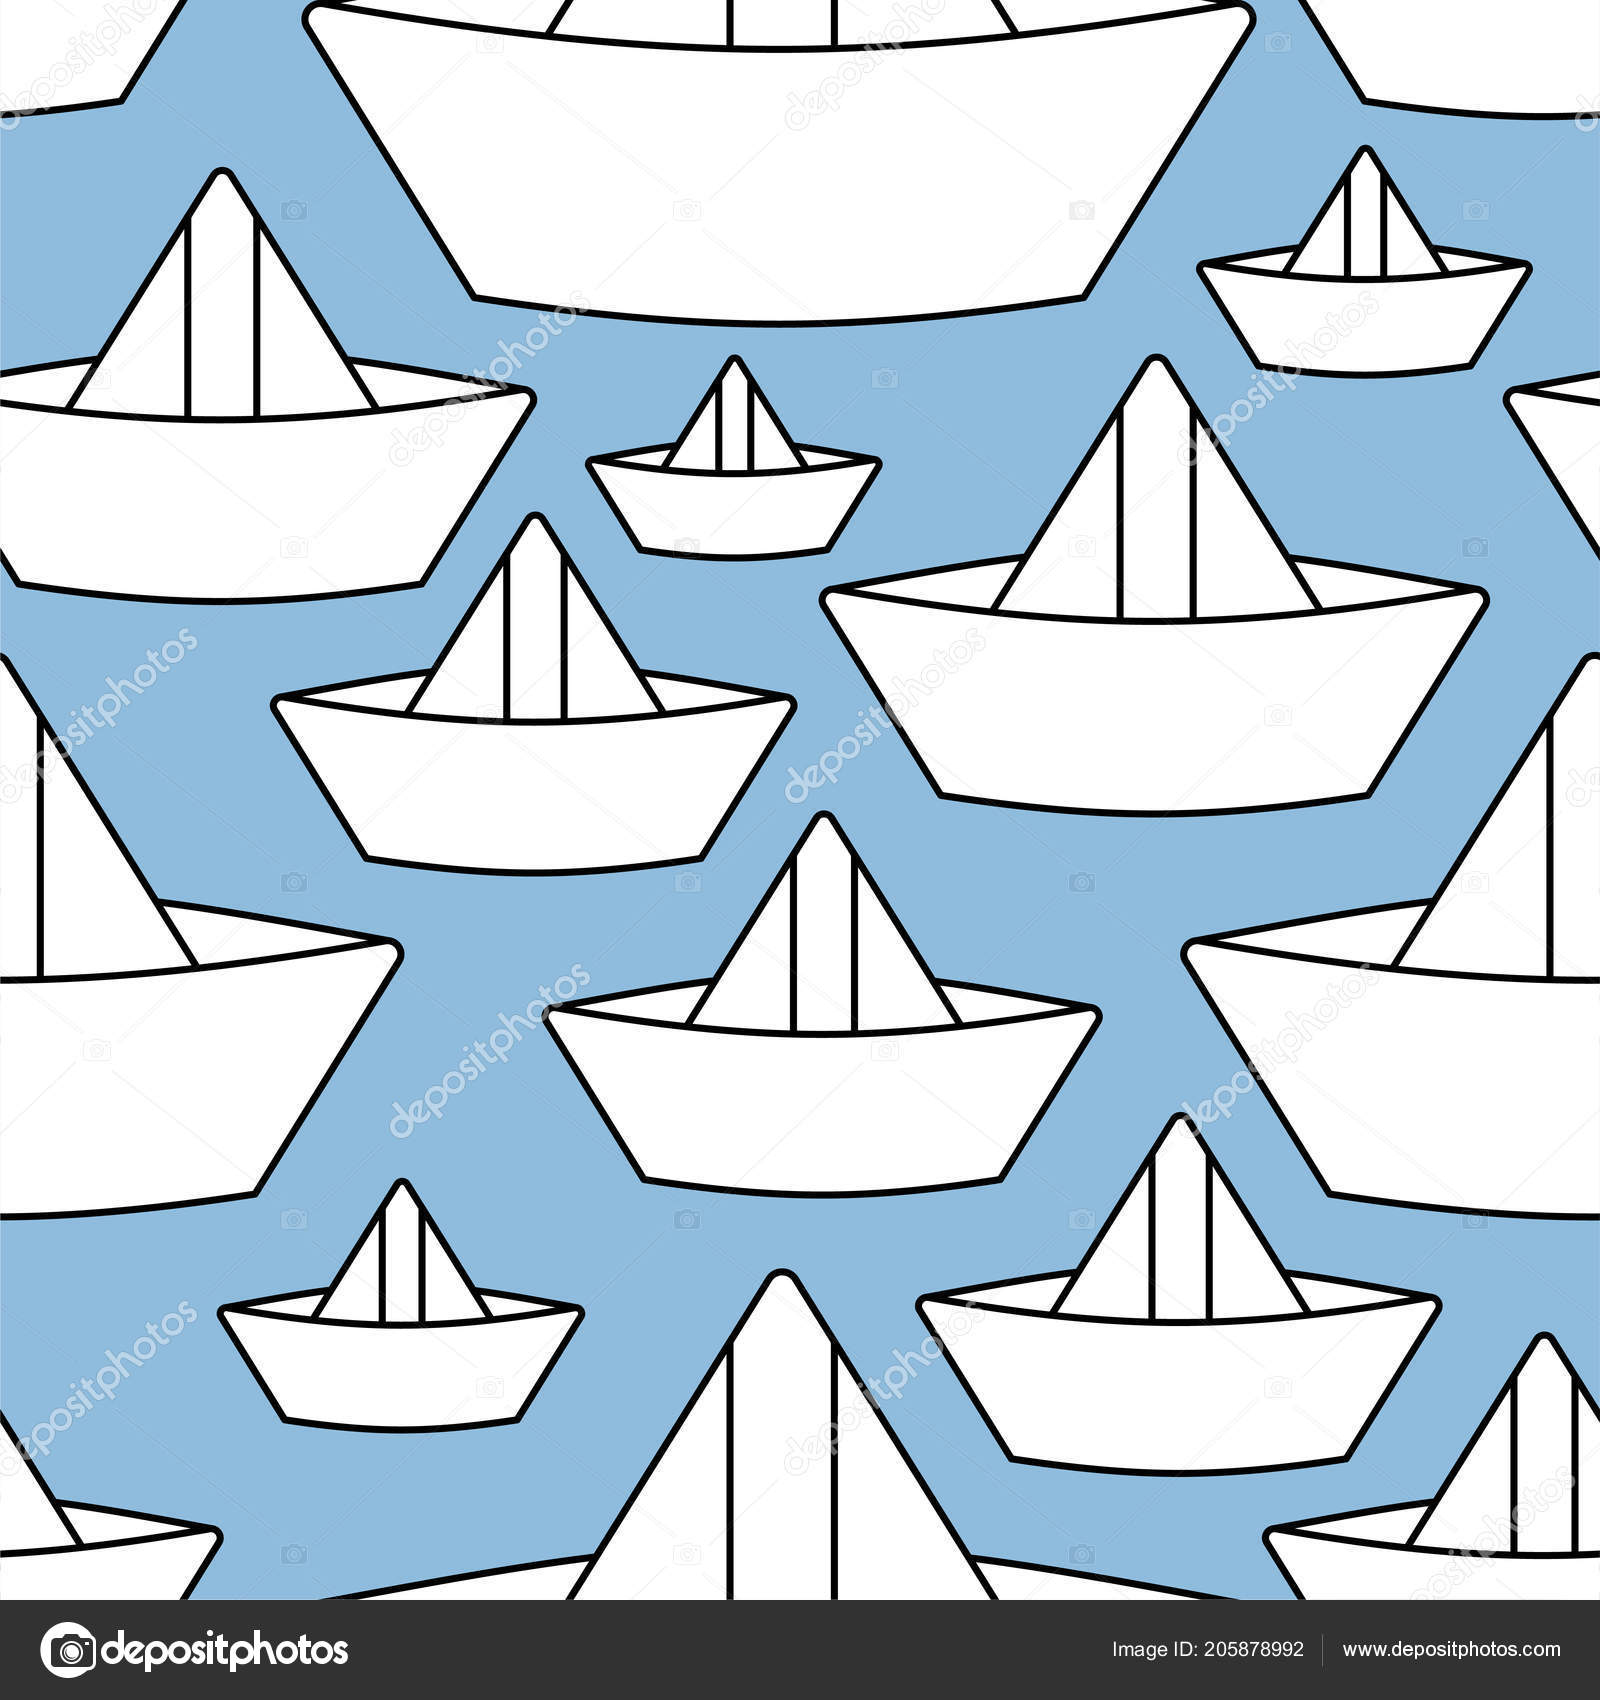 Кораблики в технике оригами